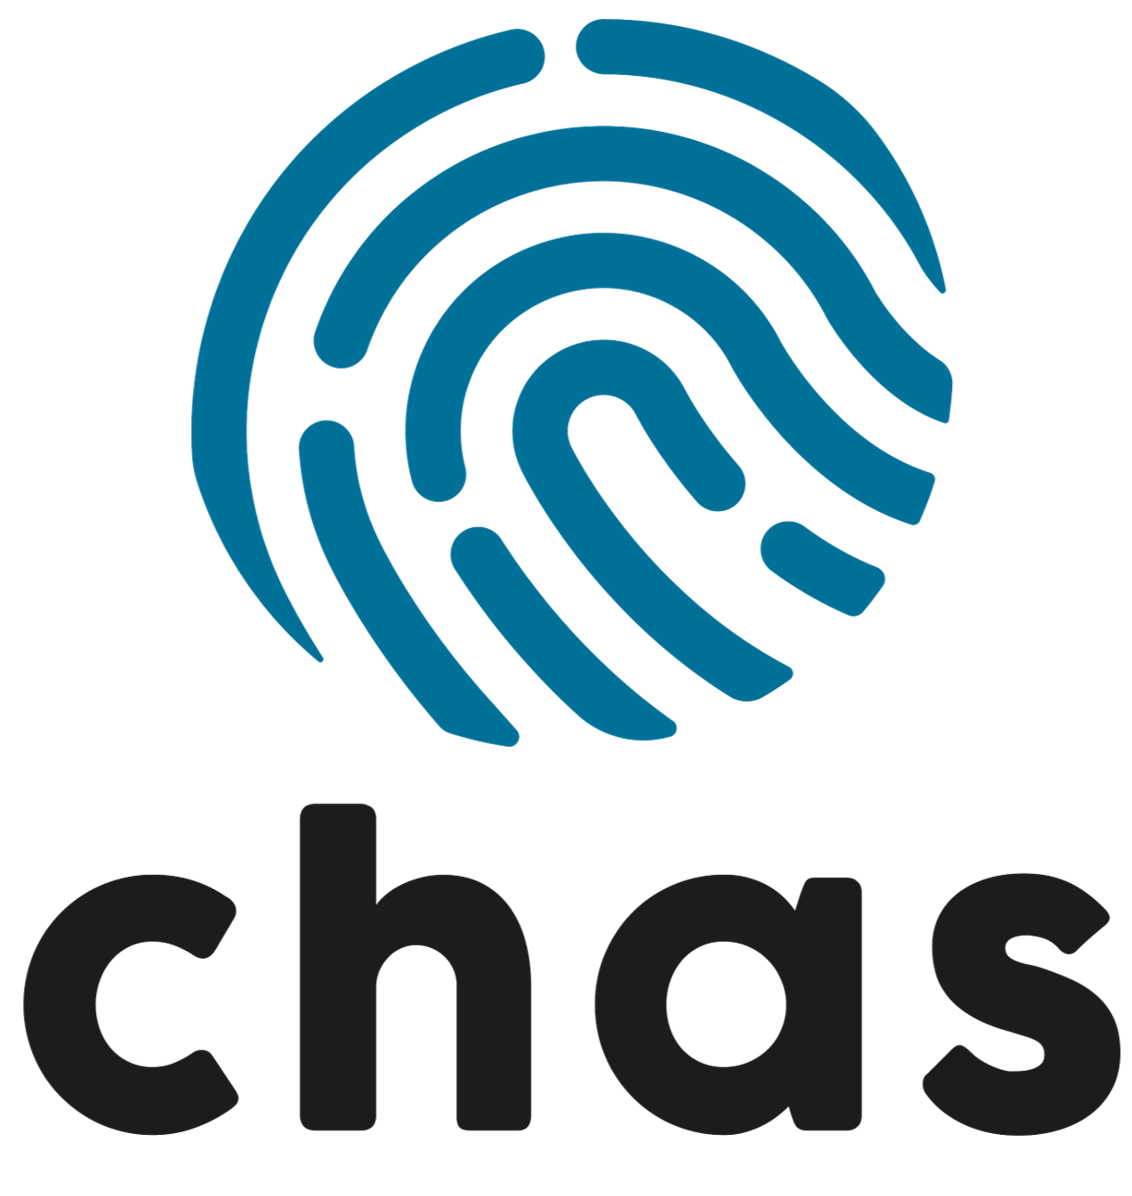 Logo de Chas